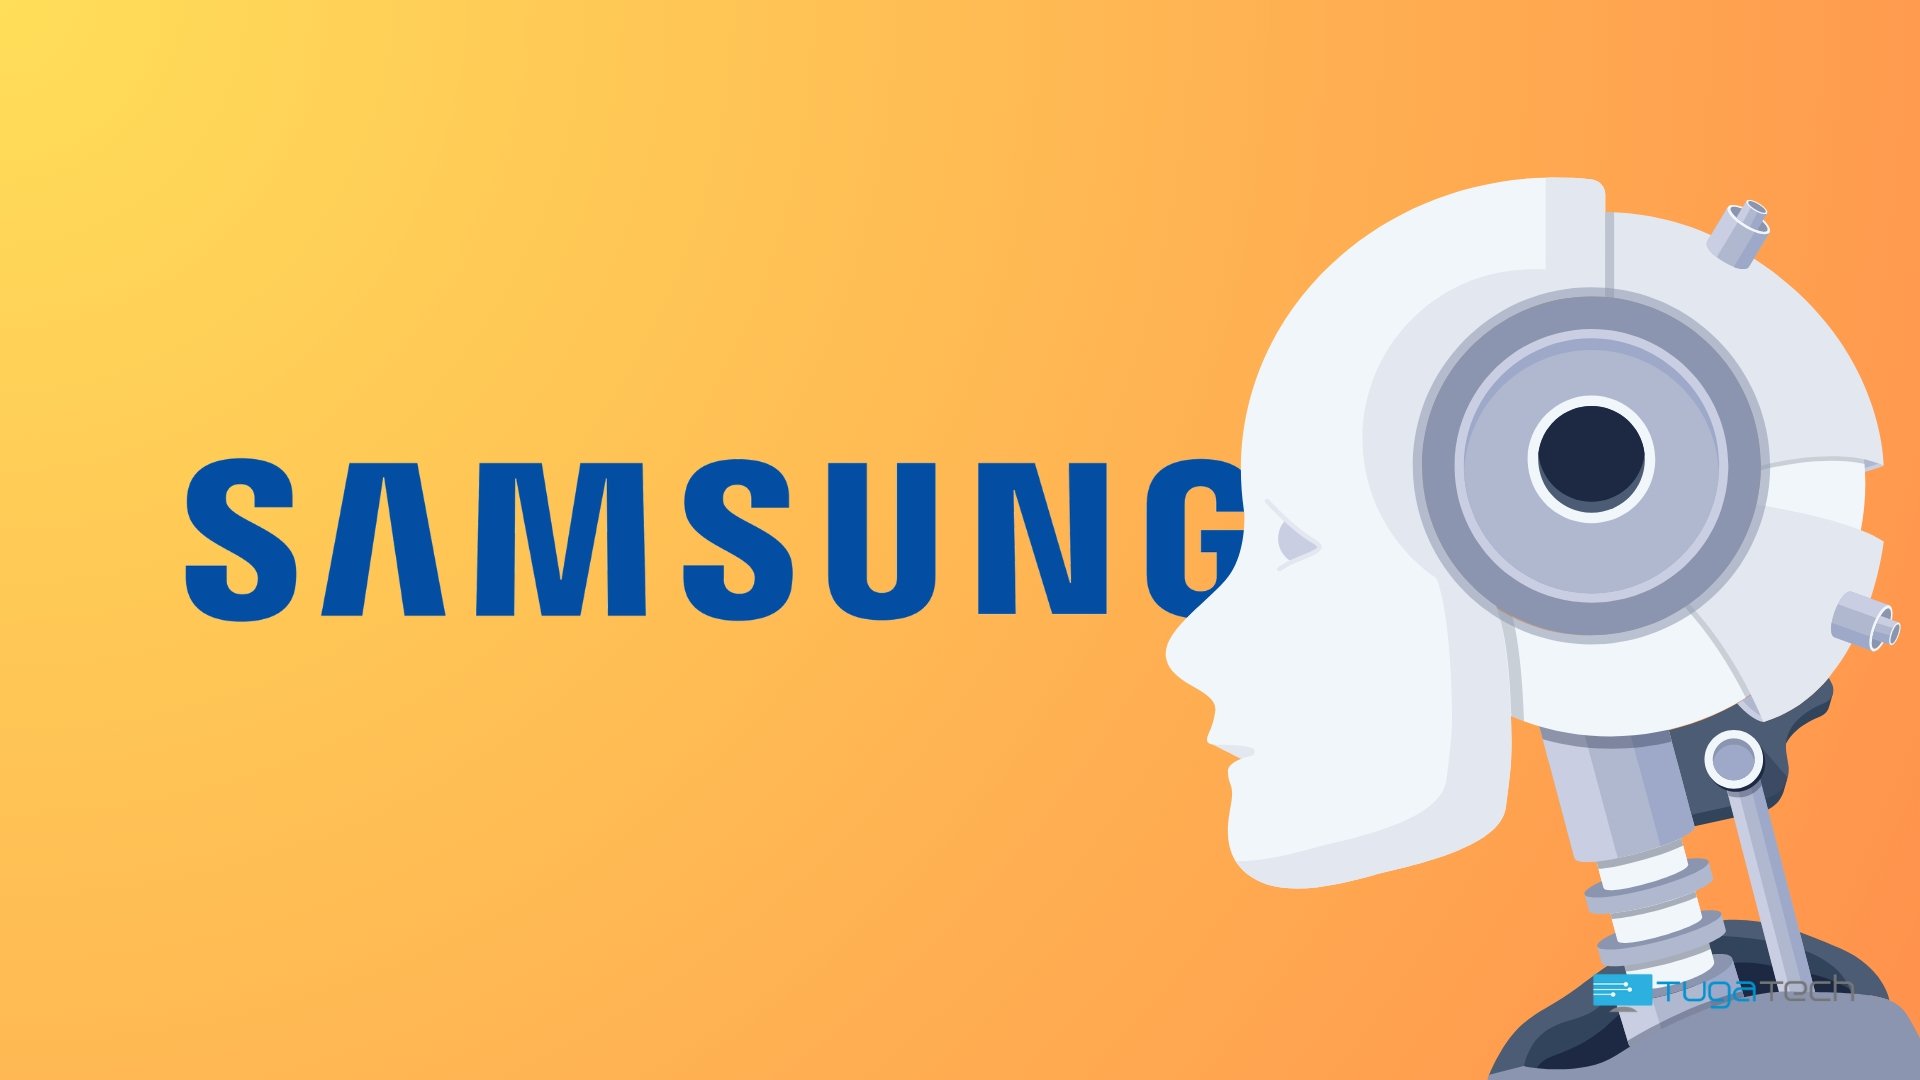 Samsung com robot de IA